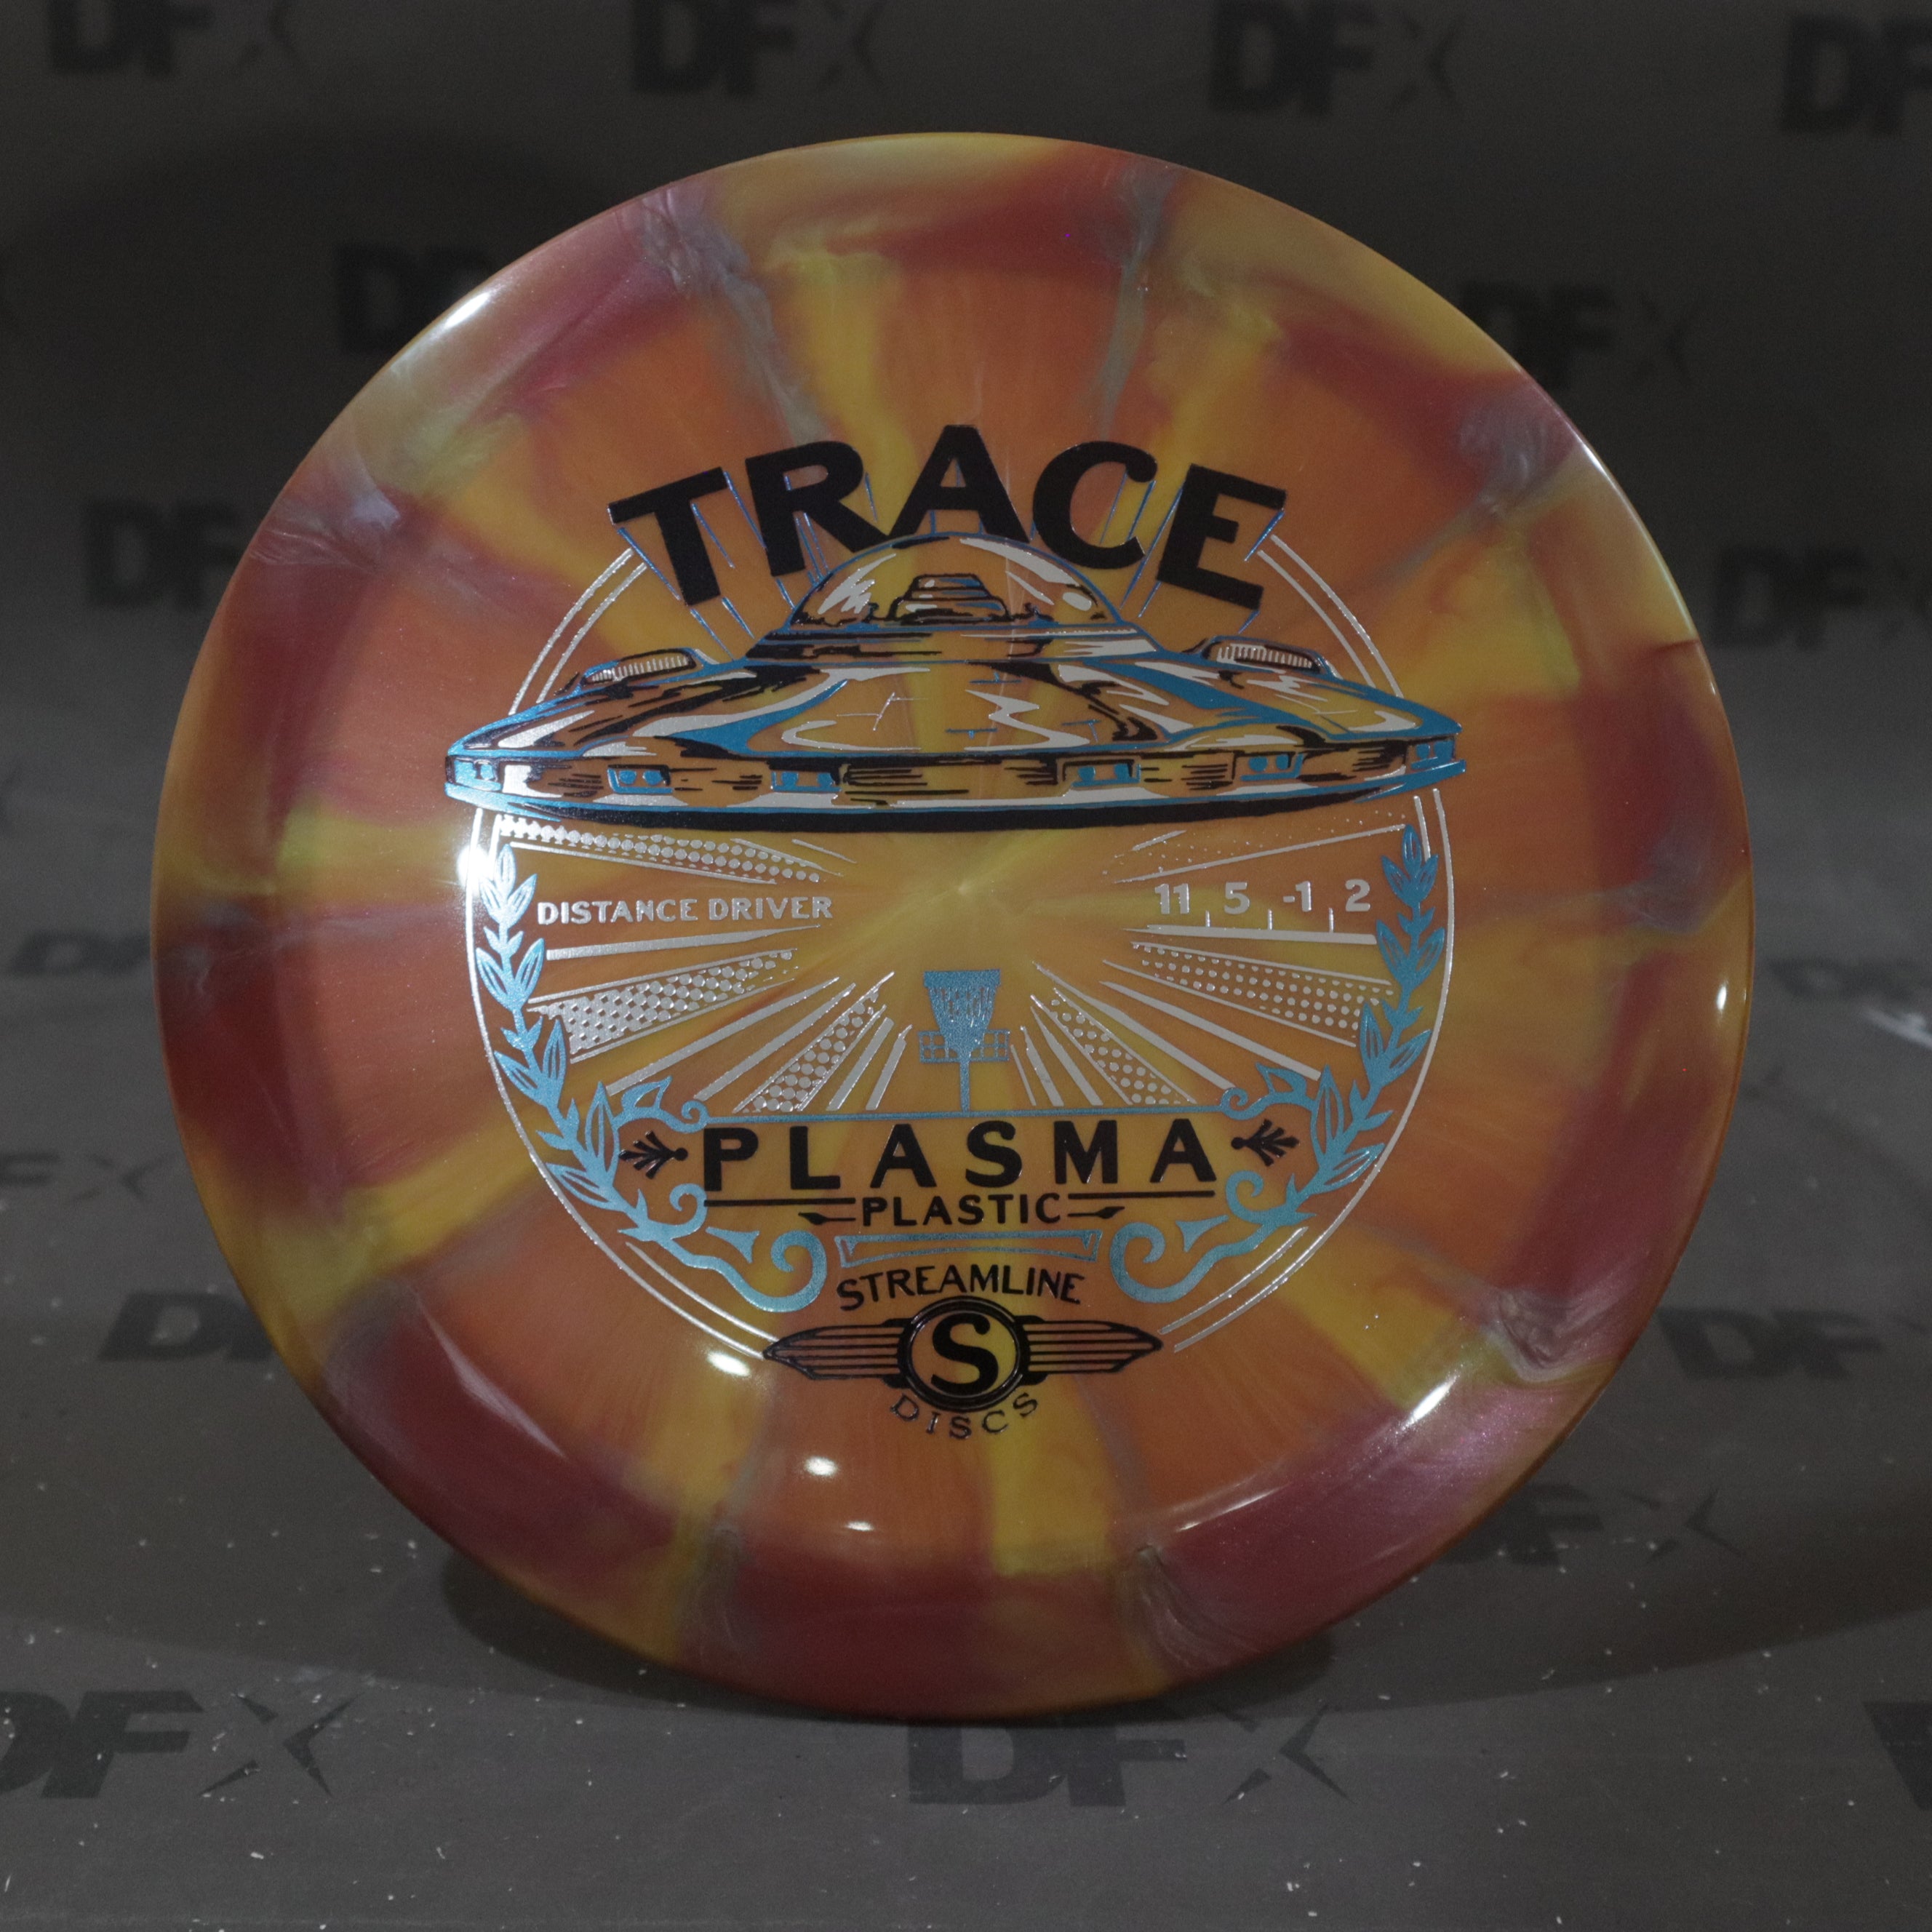 Streamline Plasma Trace